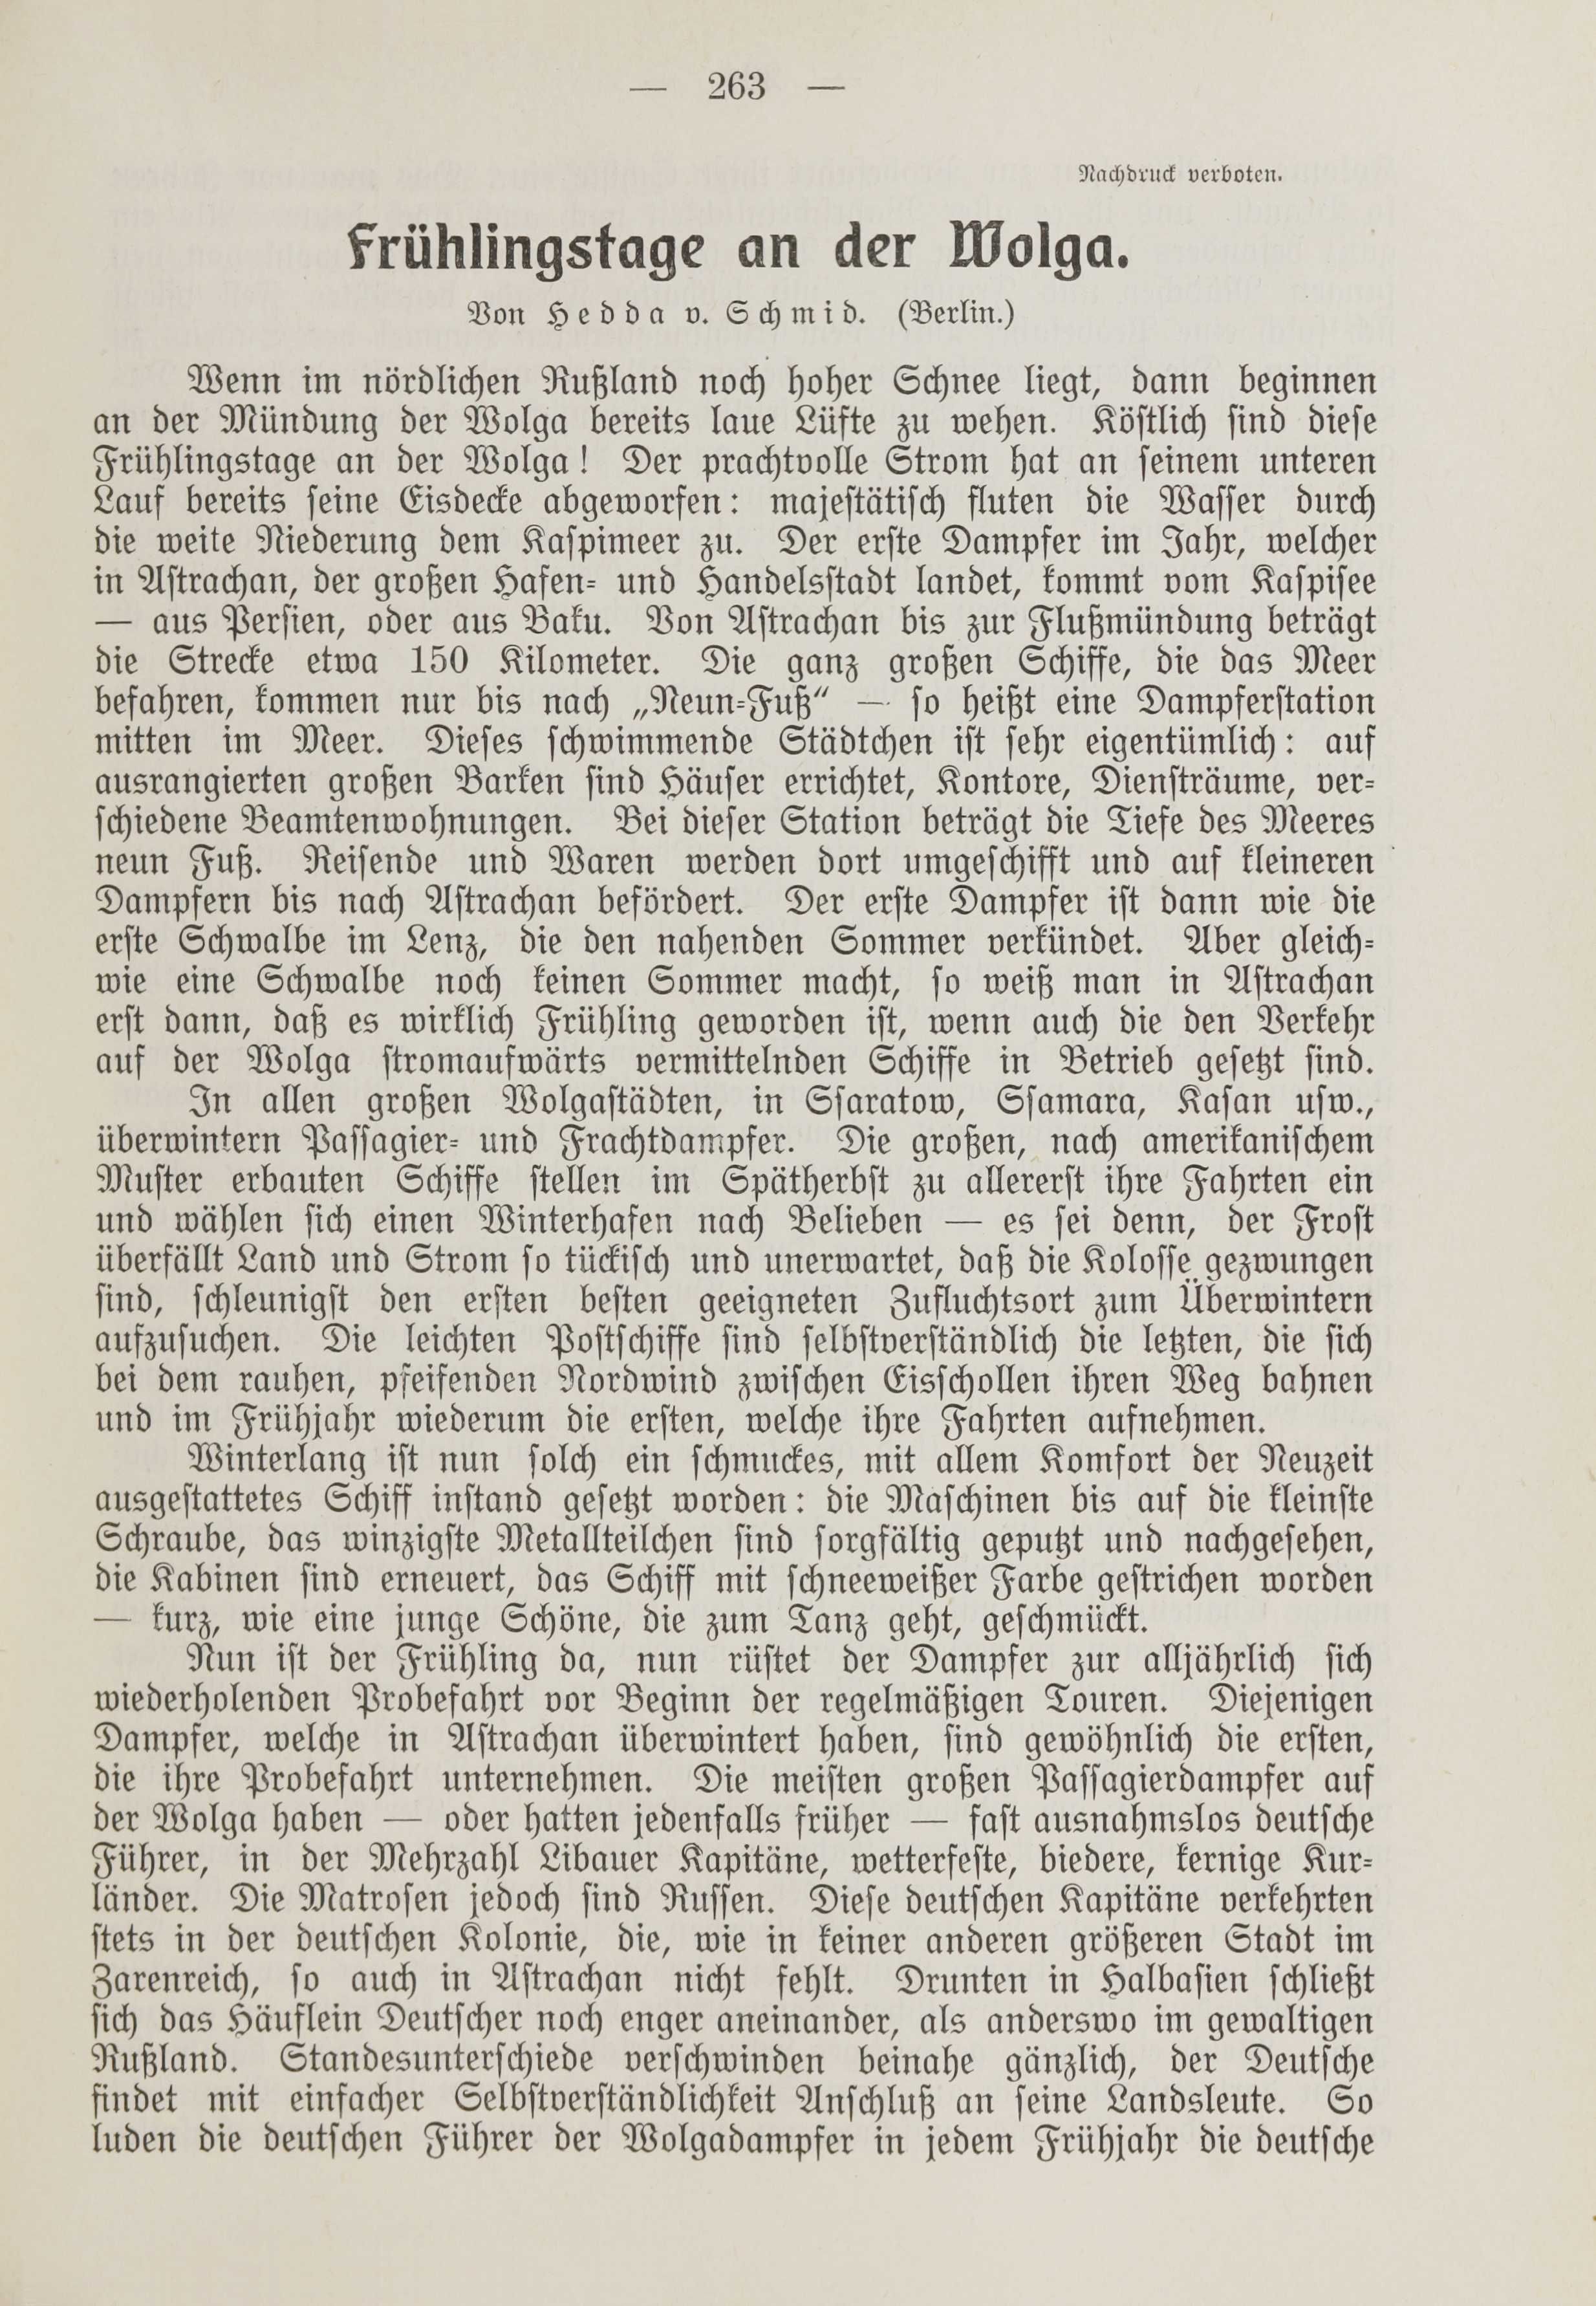 Deutsche Monatsschrift für Russland [1] (1912) | 271. (263) Main body of text